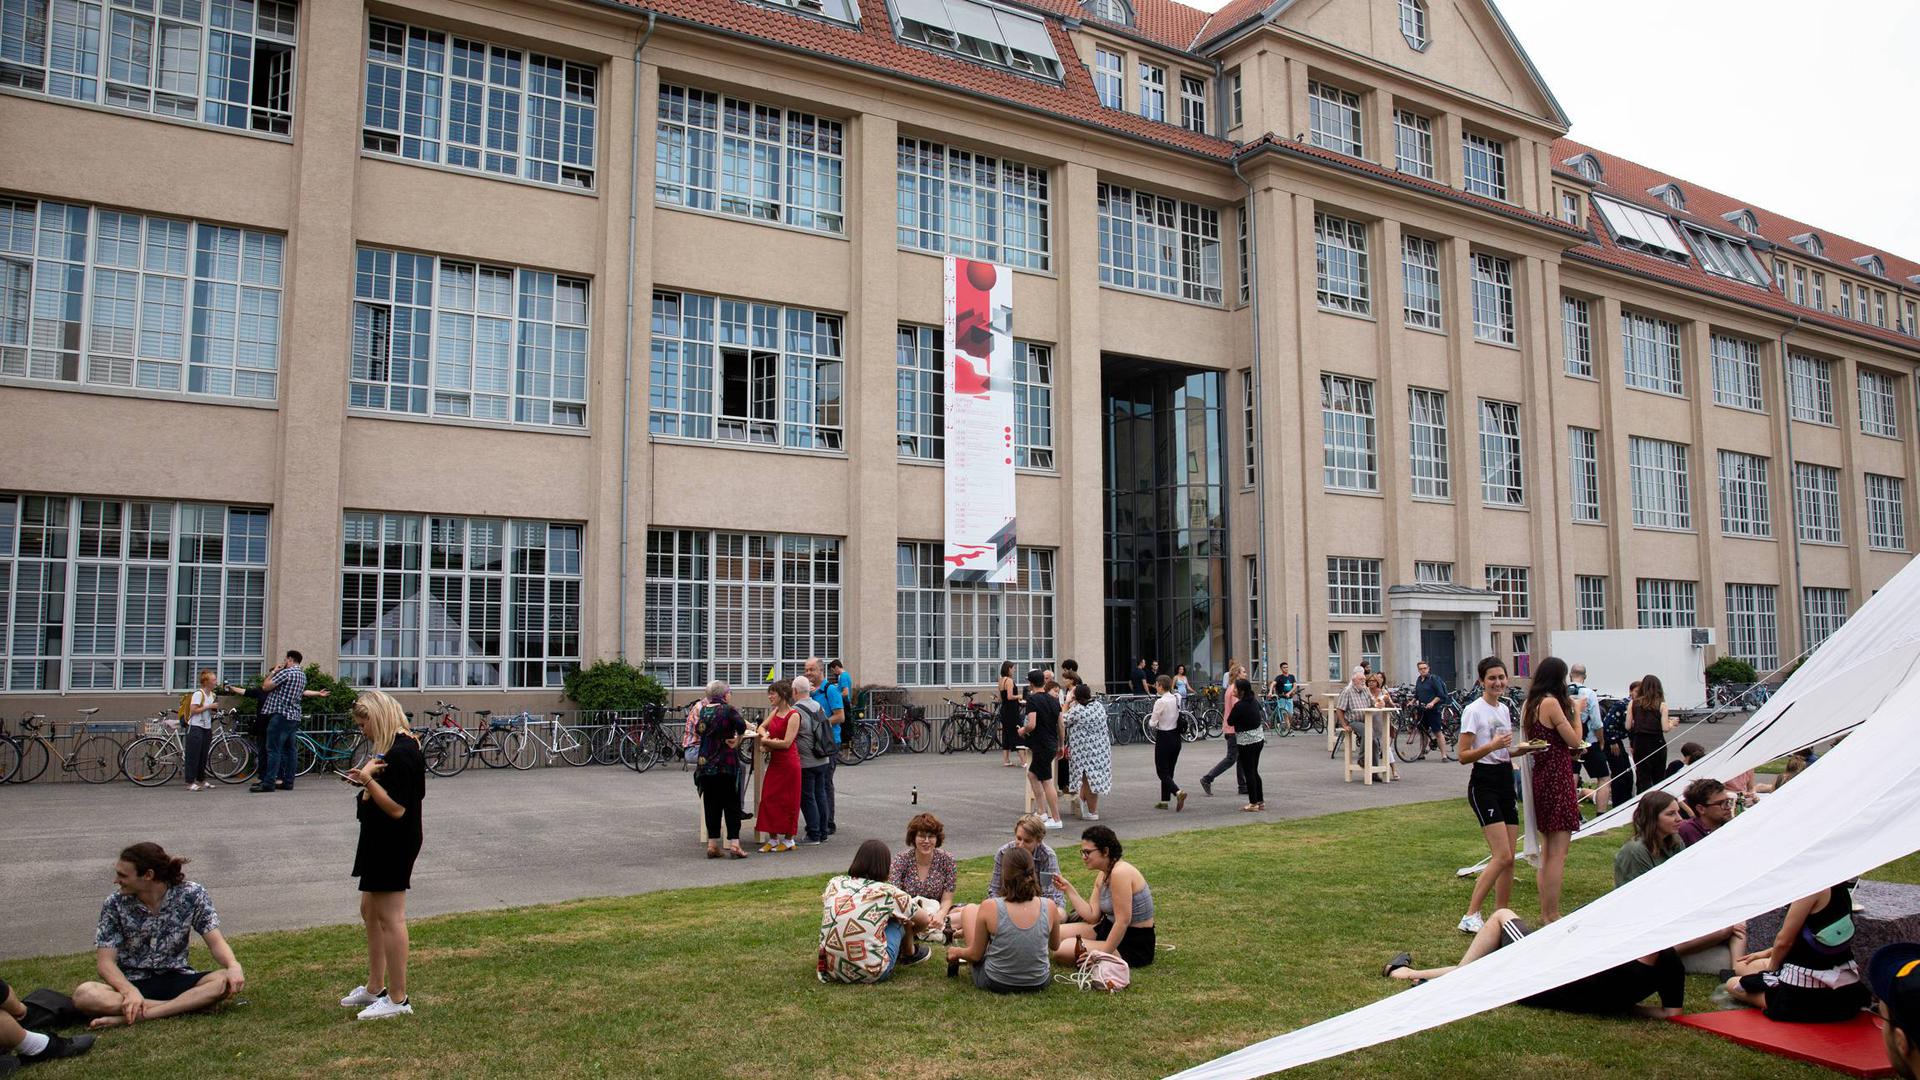 Die Hochschule für Gestaltung in Karlsruhe bietet jedes Jahr die Möglichkeit, den Studienalltag auf beeindruckende Weise bei einem Rundgang kennenzulernen.